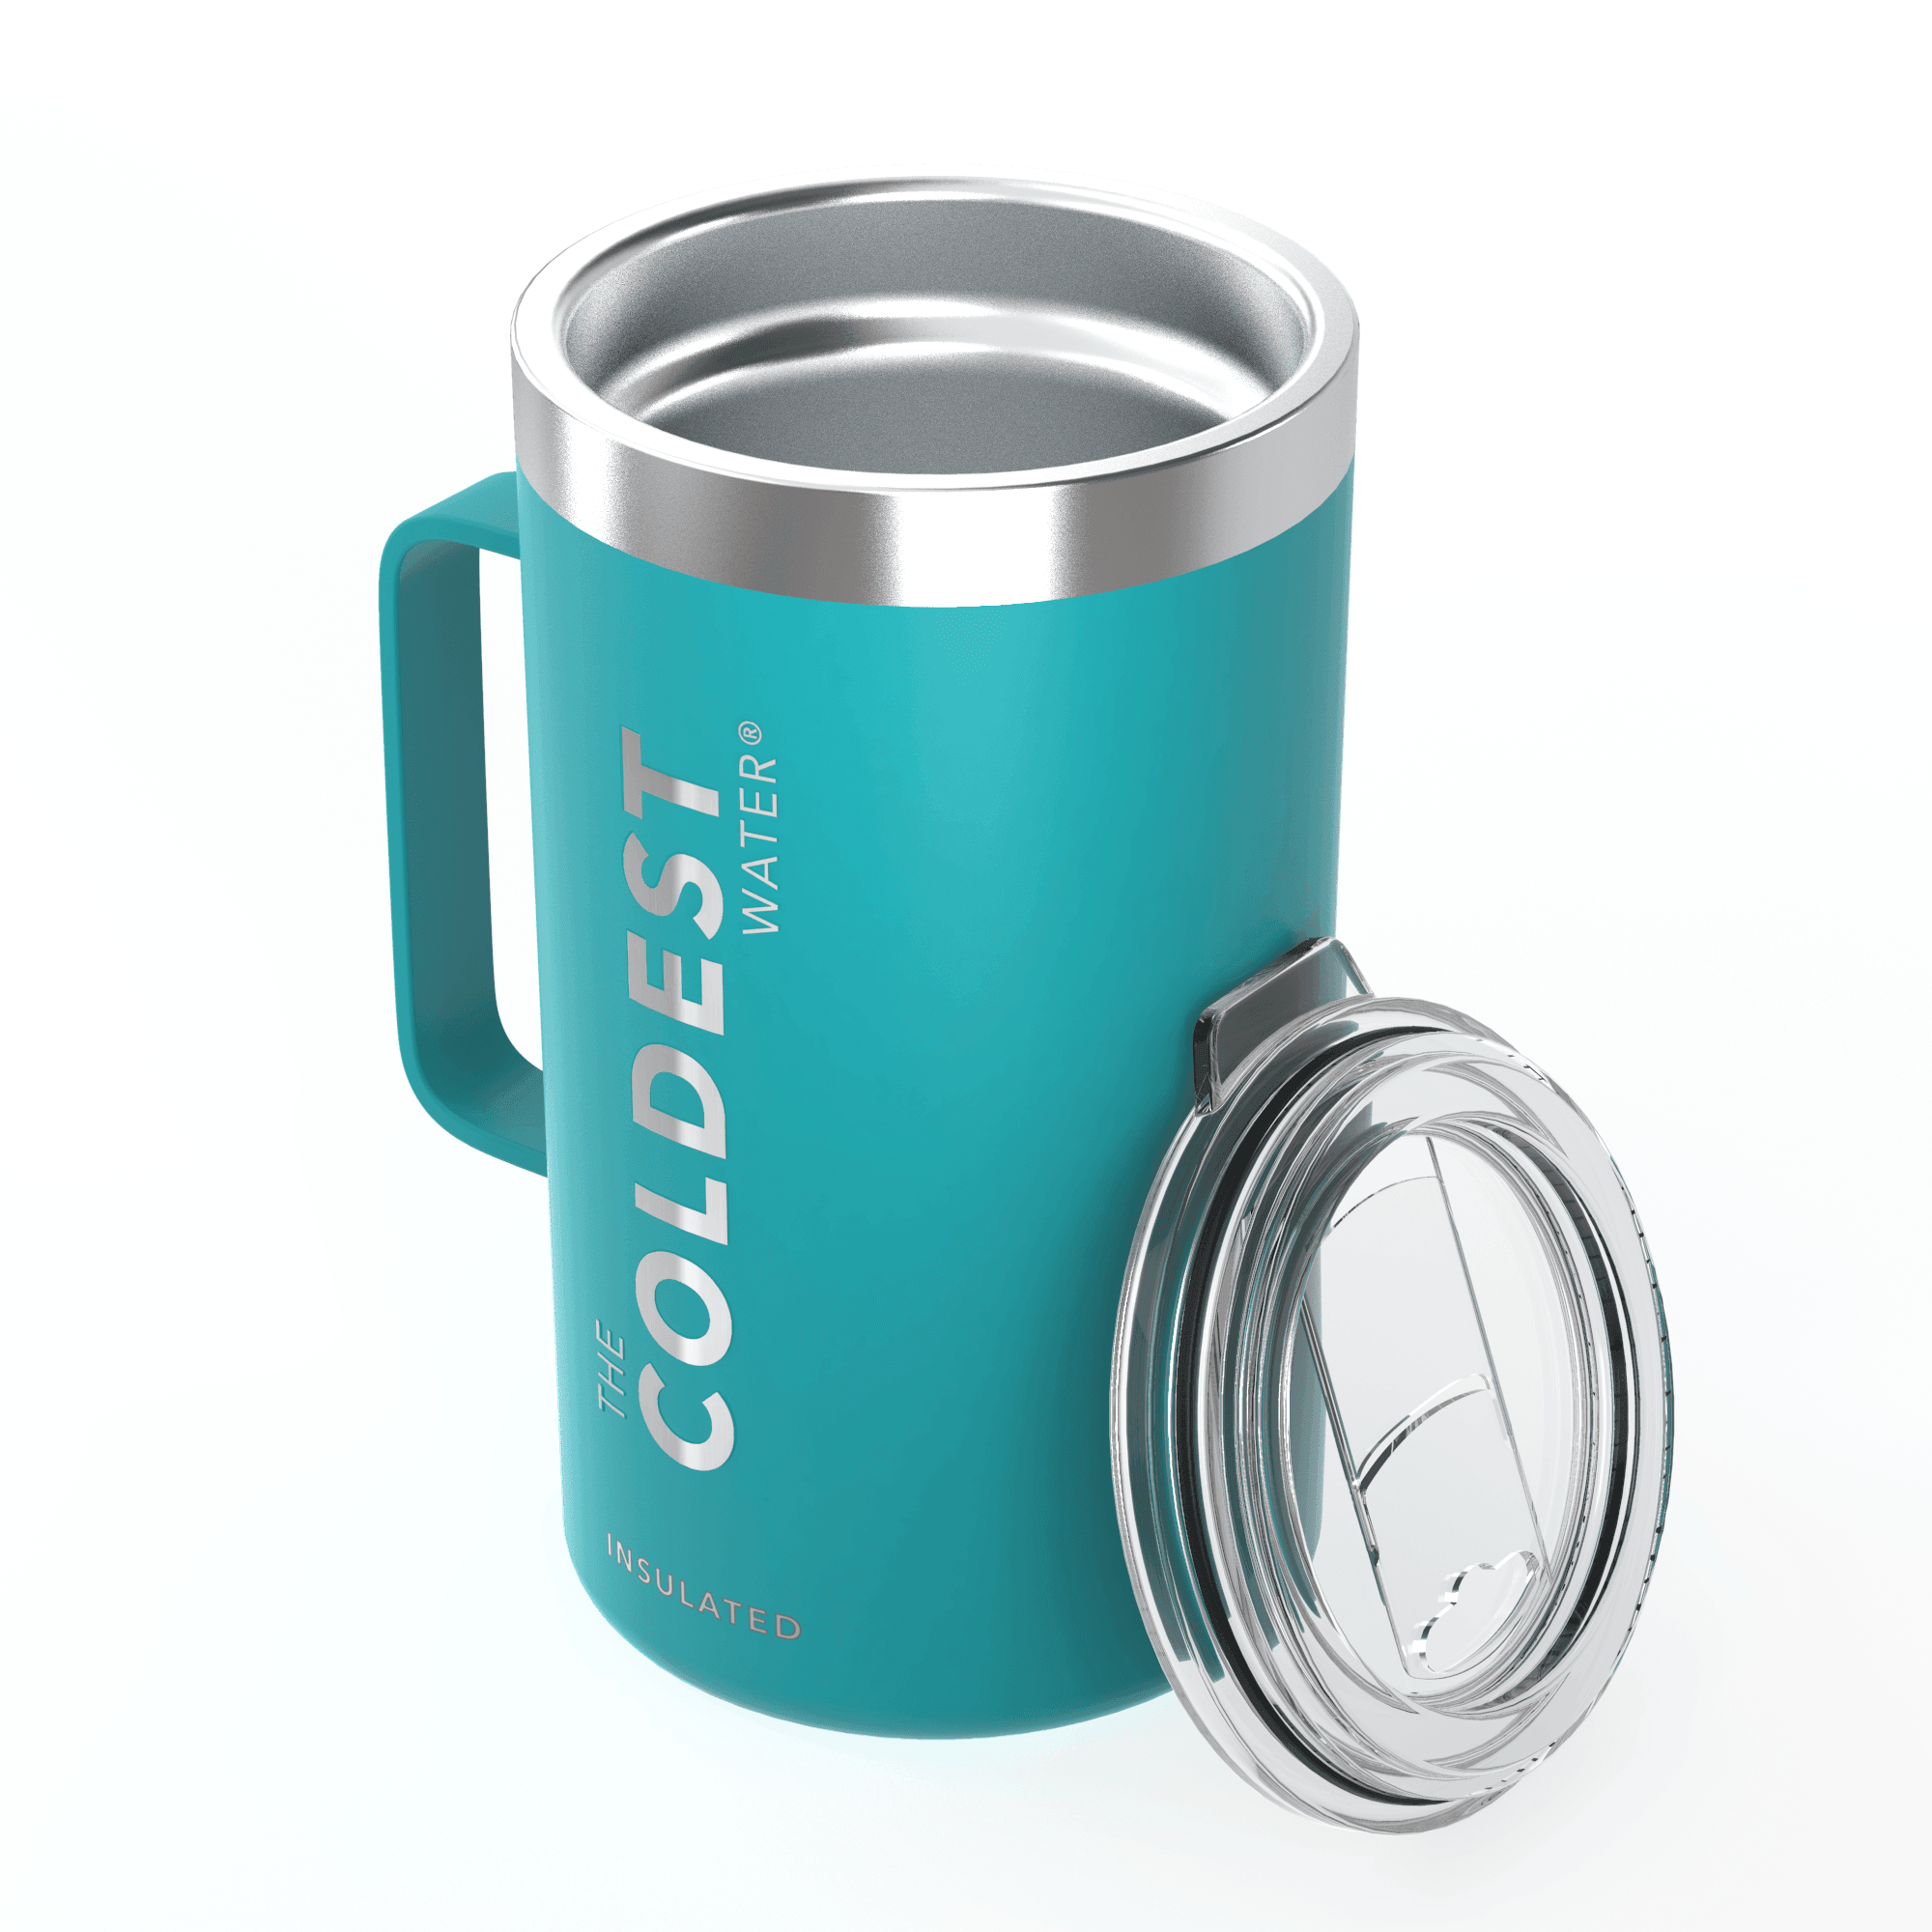 https://coldest.com/cdn/shop/products/coldest-24oz-coffee-mug-881989.png?v=1695796614